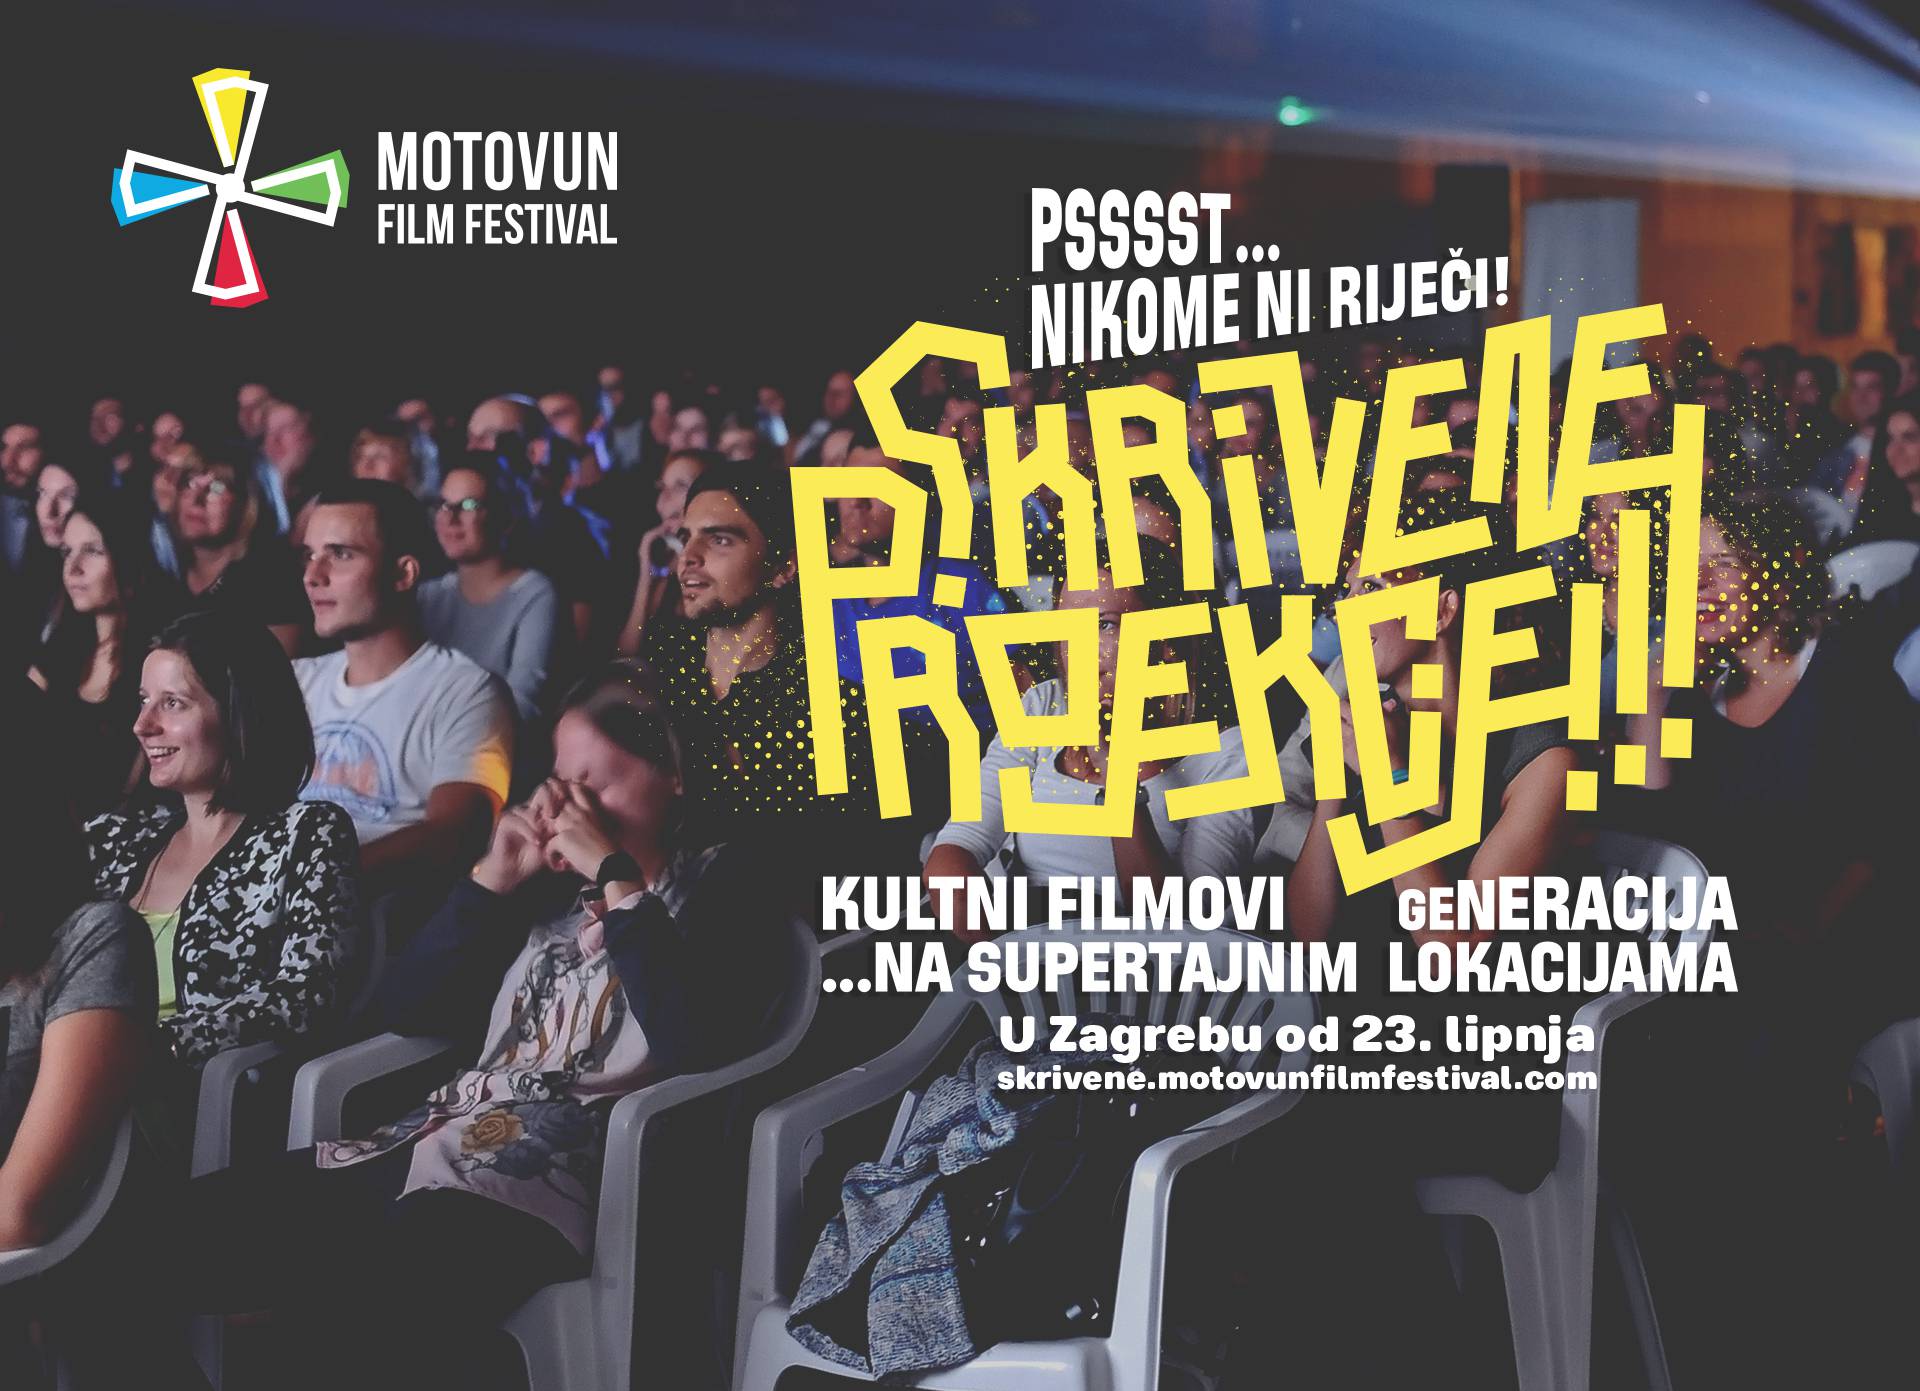 Pssst! Motovun film festival sakrio je filmove po Zagrebu